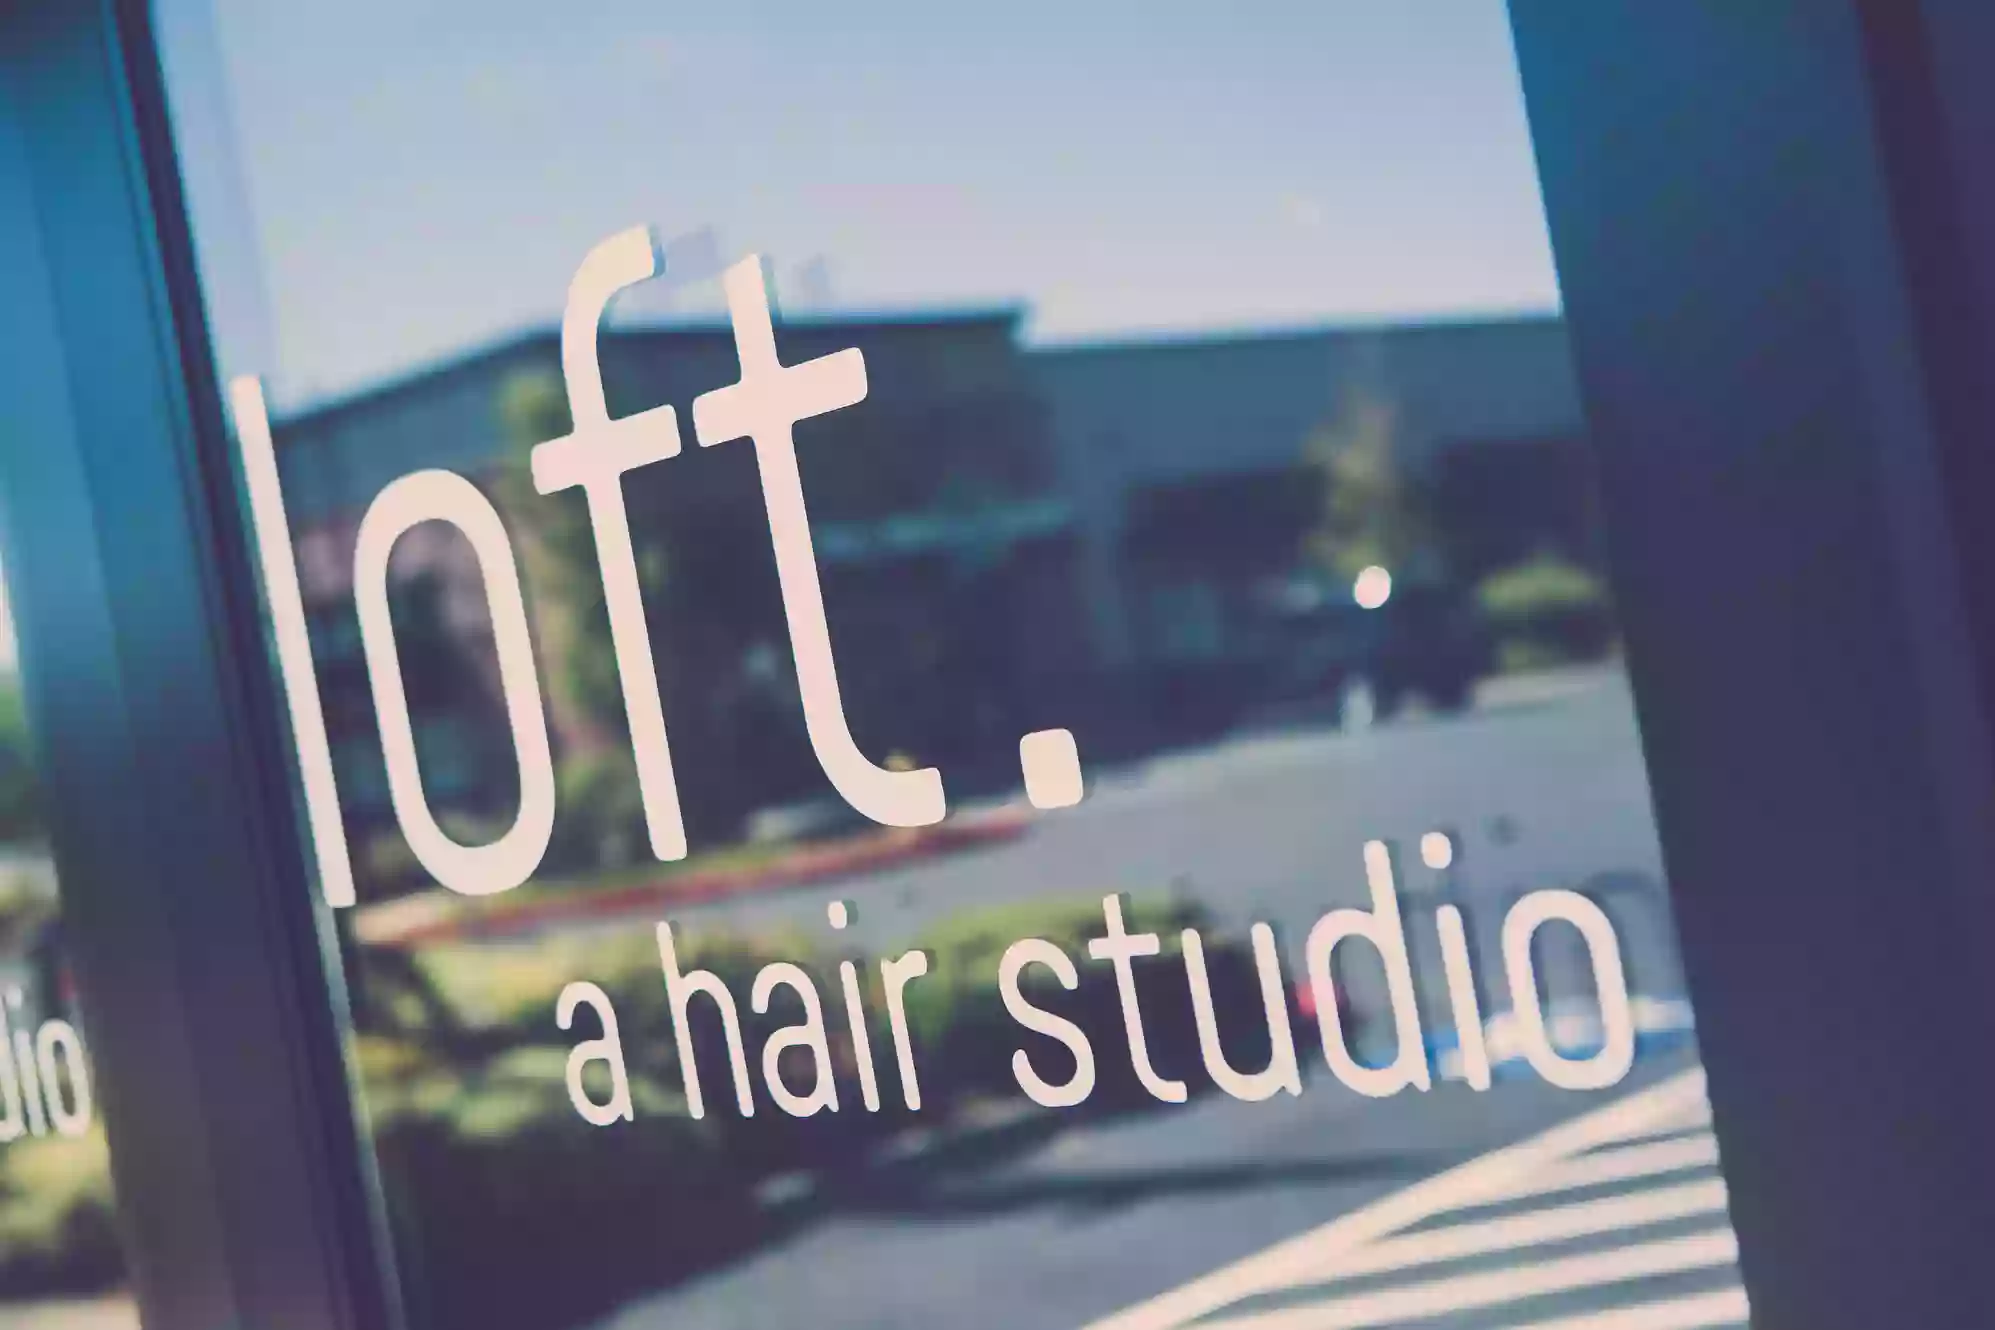 loft. a hair + skin studio